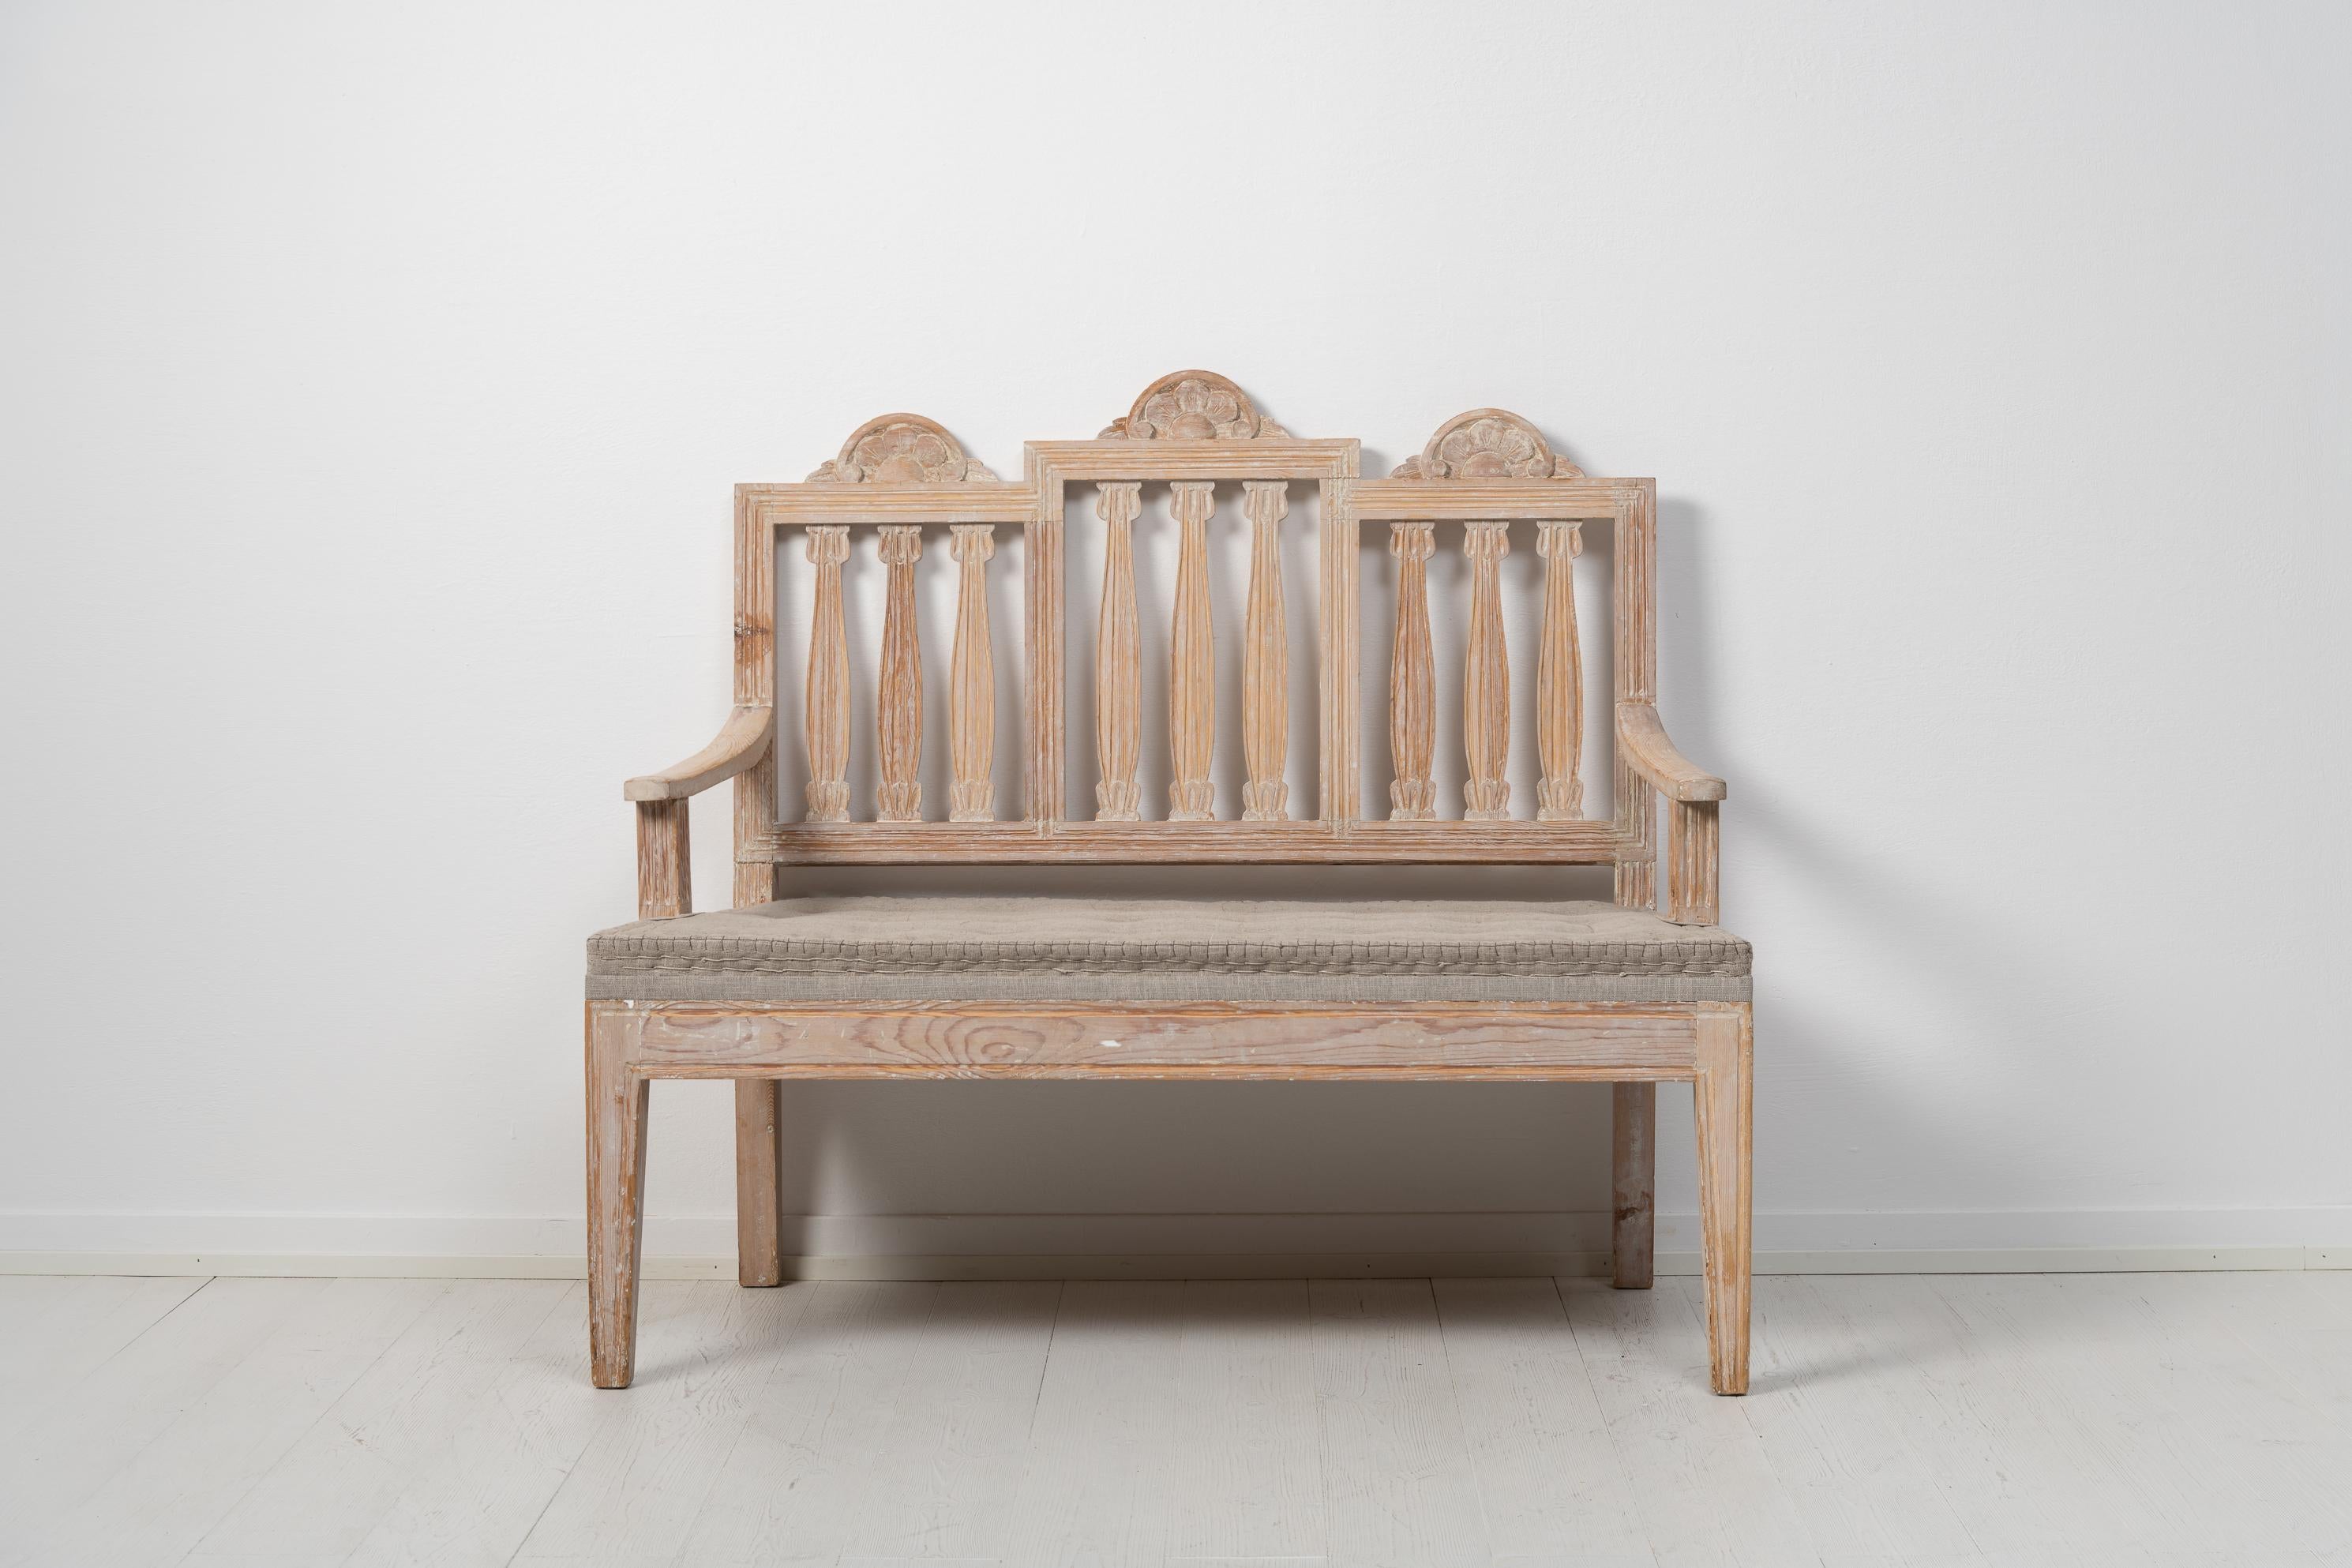 Schwedisches kleines Sofa im gustavianischen Stil. Die Rückenlehne des Sofas besteht aus 3 Teilen mit dem typisch gustavischen Dekor und Form. Das Sofa stammt aus den späten 1800er Jahren und ist aus Kiefer gefertigt. Handgeschnitztes Holzdekor und